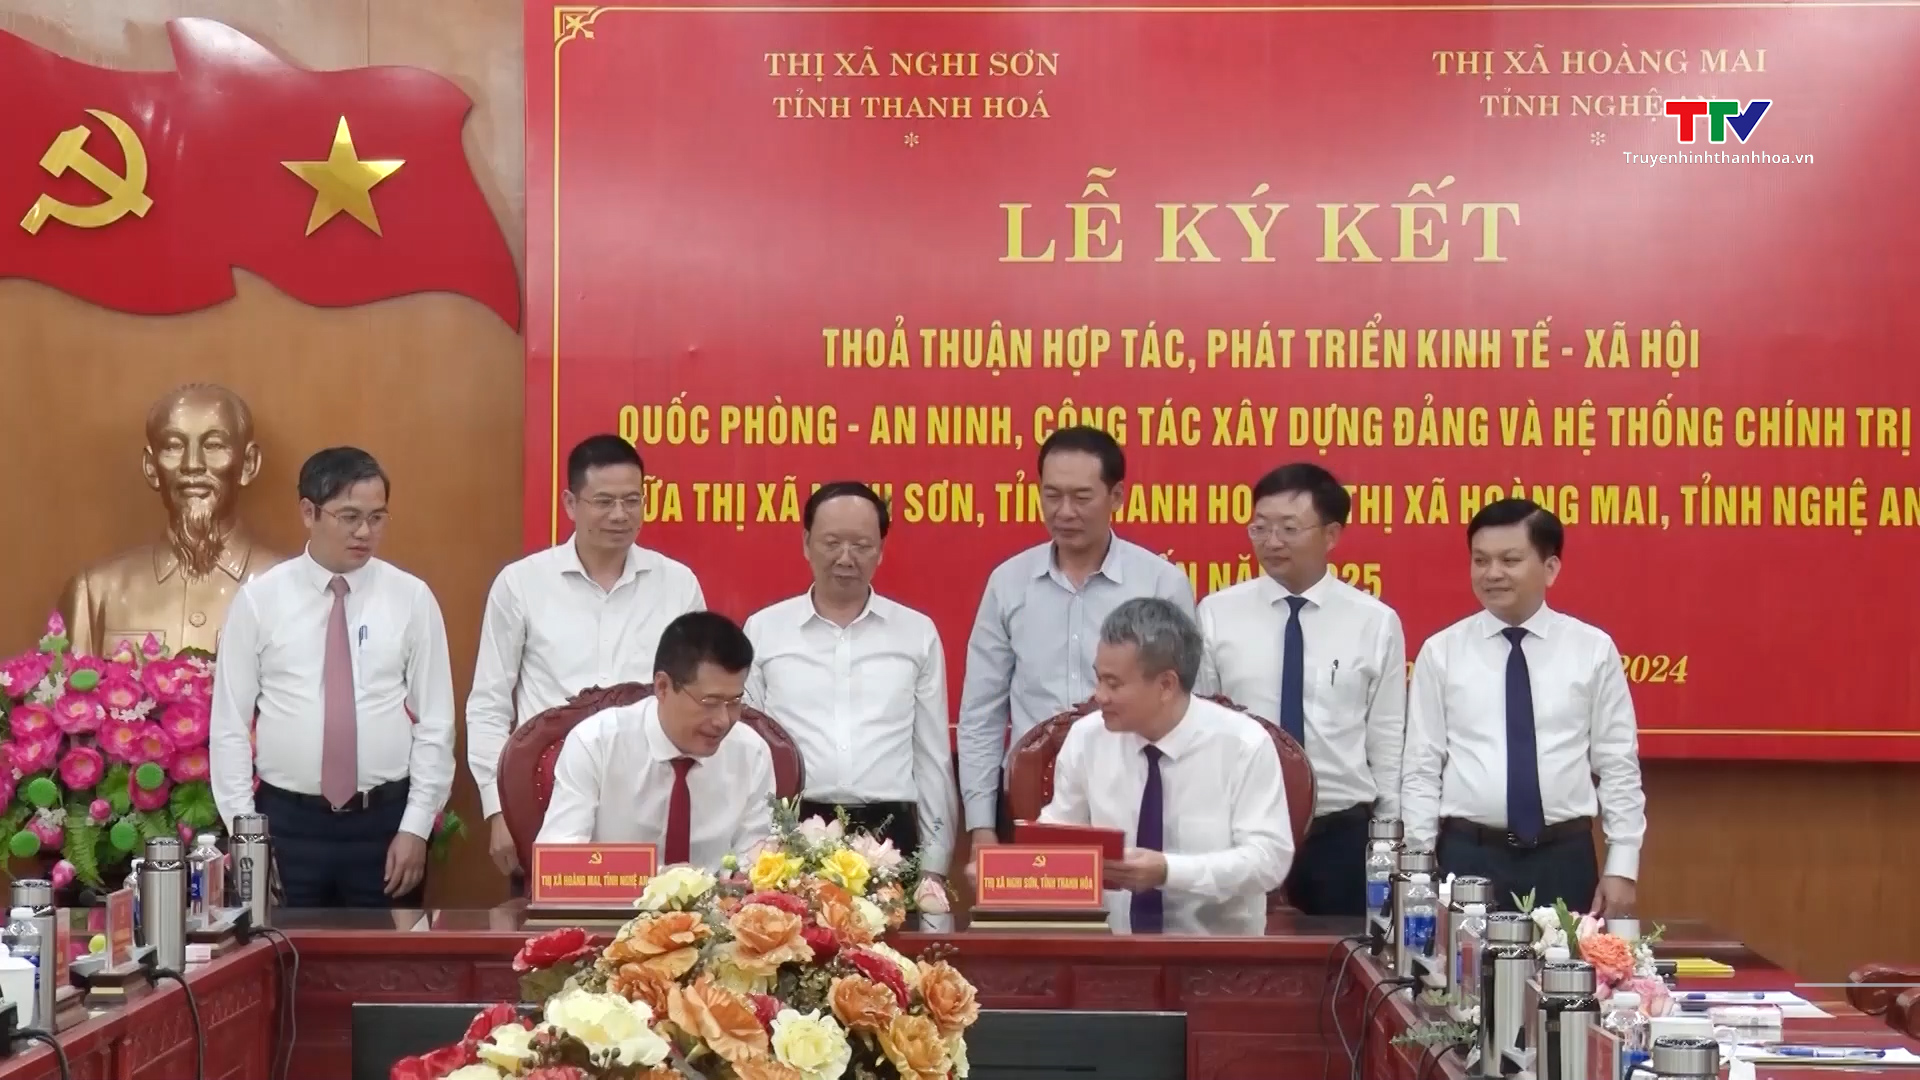 Thị xã Nghi Sơn, tỉnh Thanh Hóa và Thị xã Hoàng Mai, tỉnh Nghệ An ký kết thỏa thuận hợp tác- Ảnh 1.